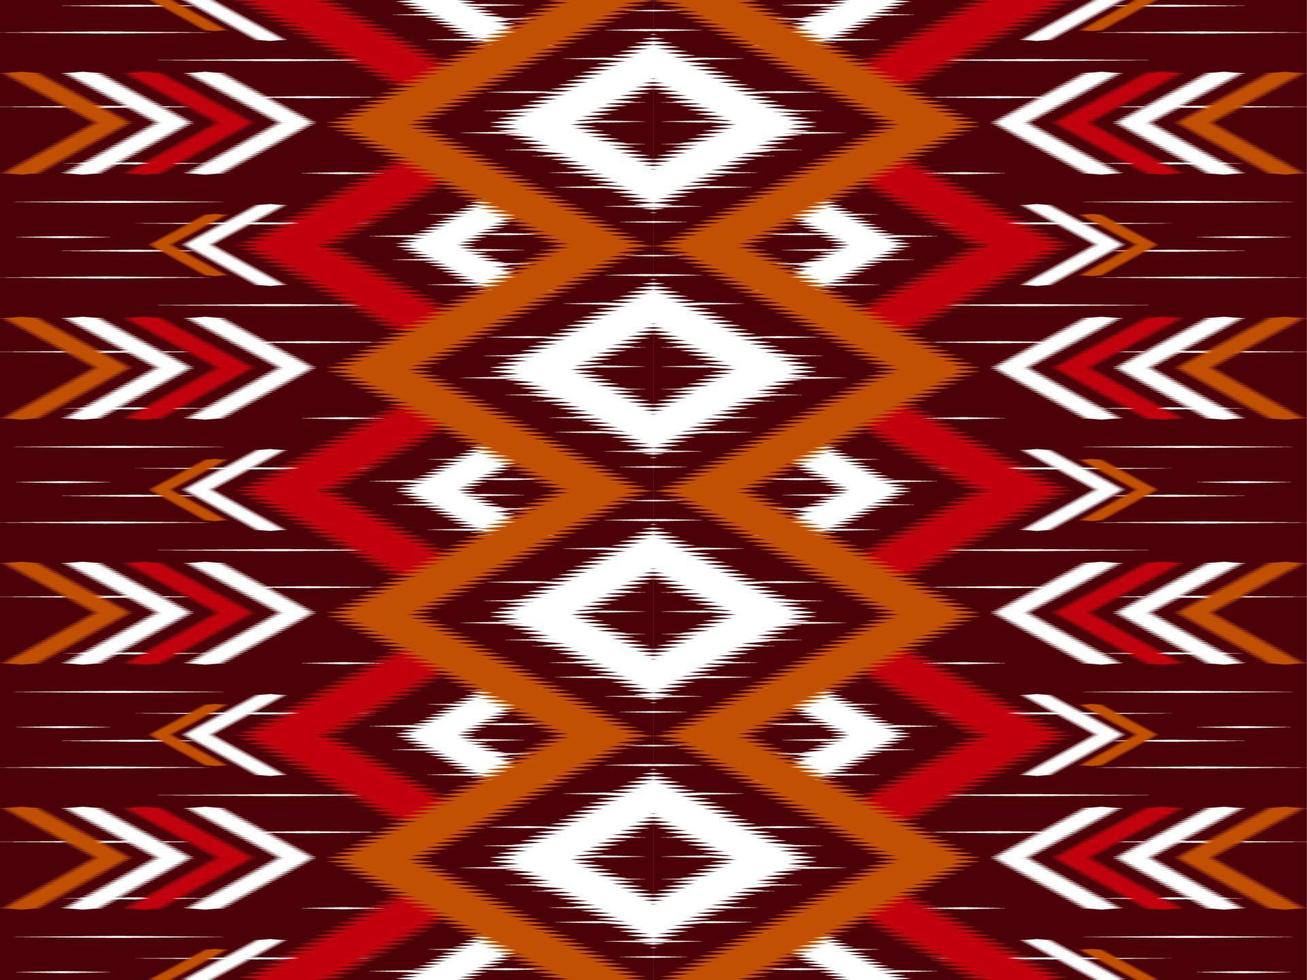 padrão sem emenda étnico ikat chevron. estilo tribal tradicional. design para plano de fundo,ilustração,textura,tecido,batik,vestuário,embrulho,papel de parede,tapete,bordado vetor